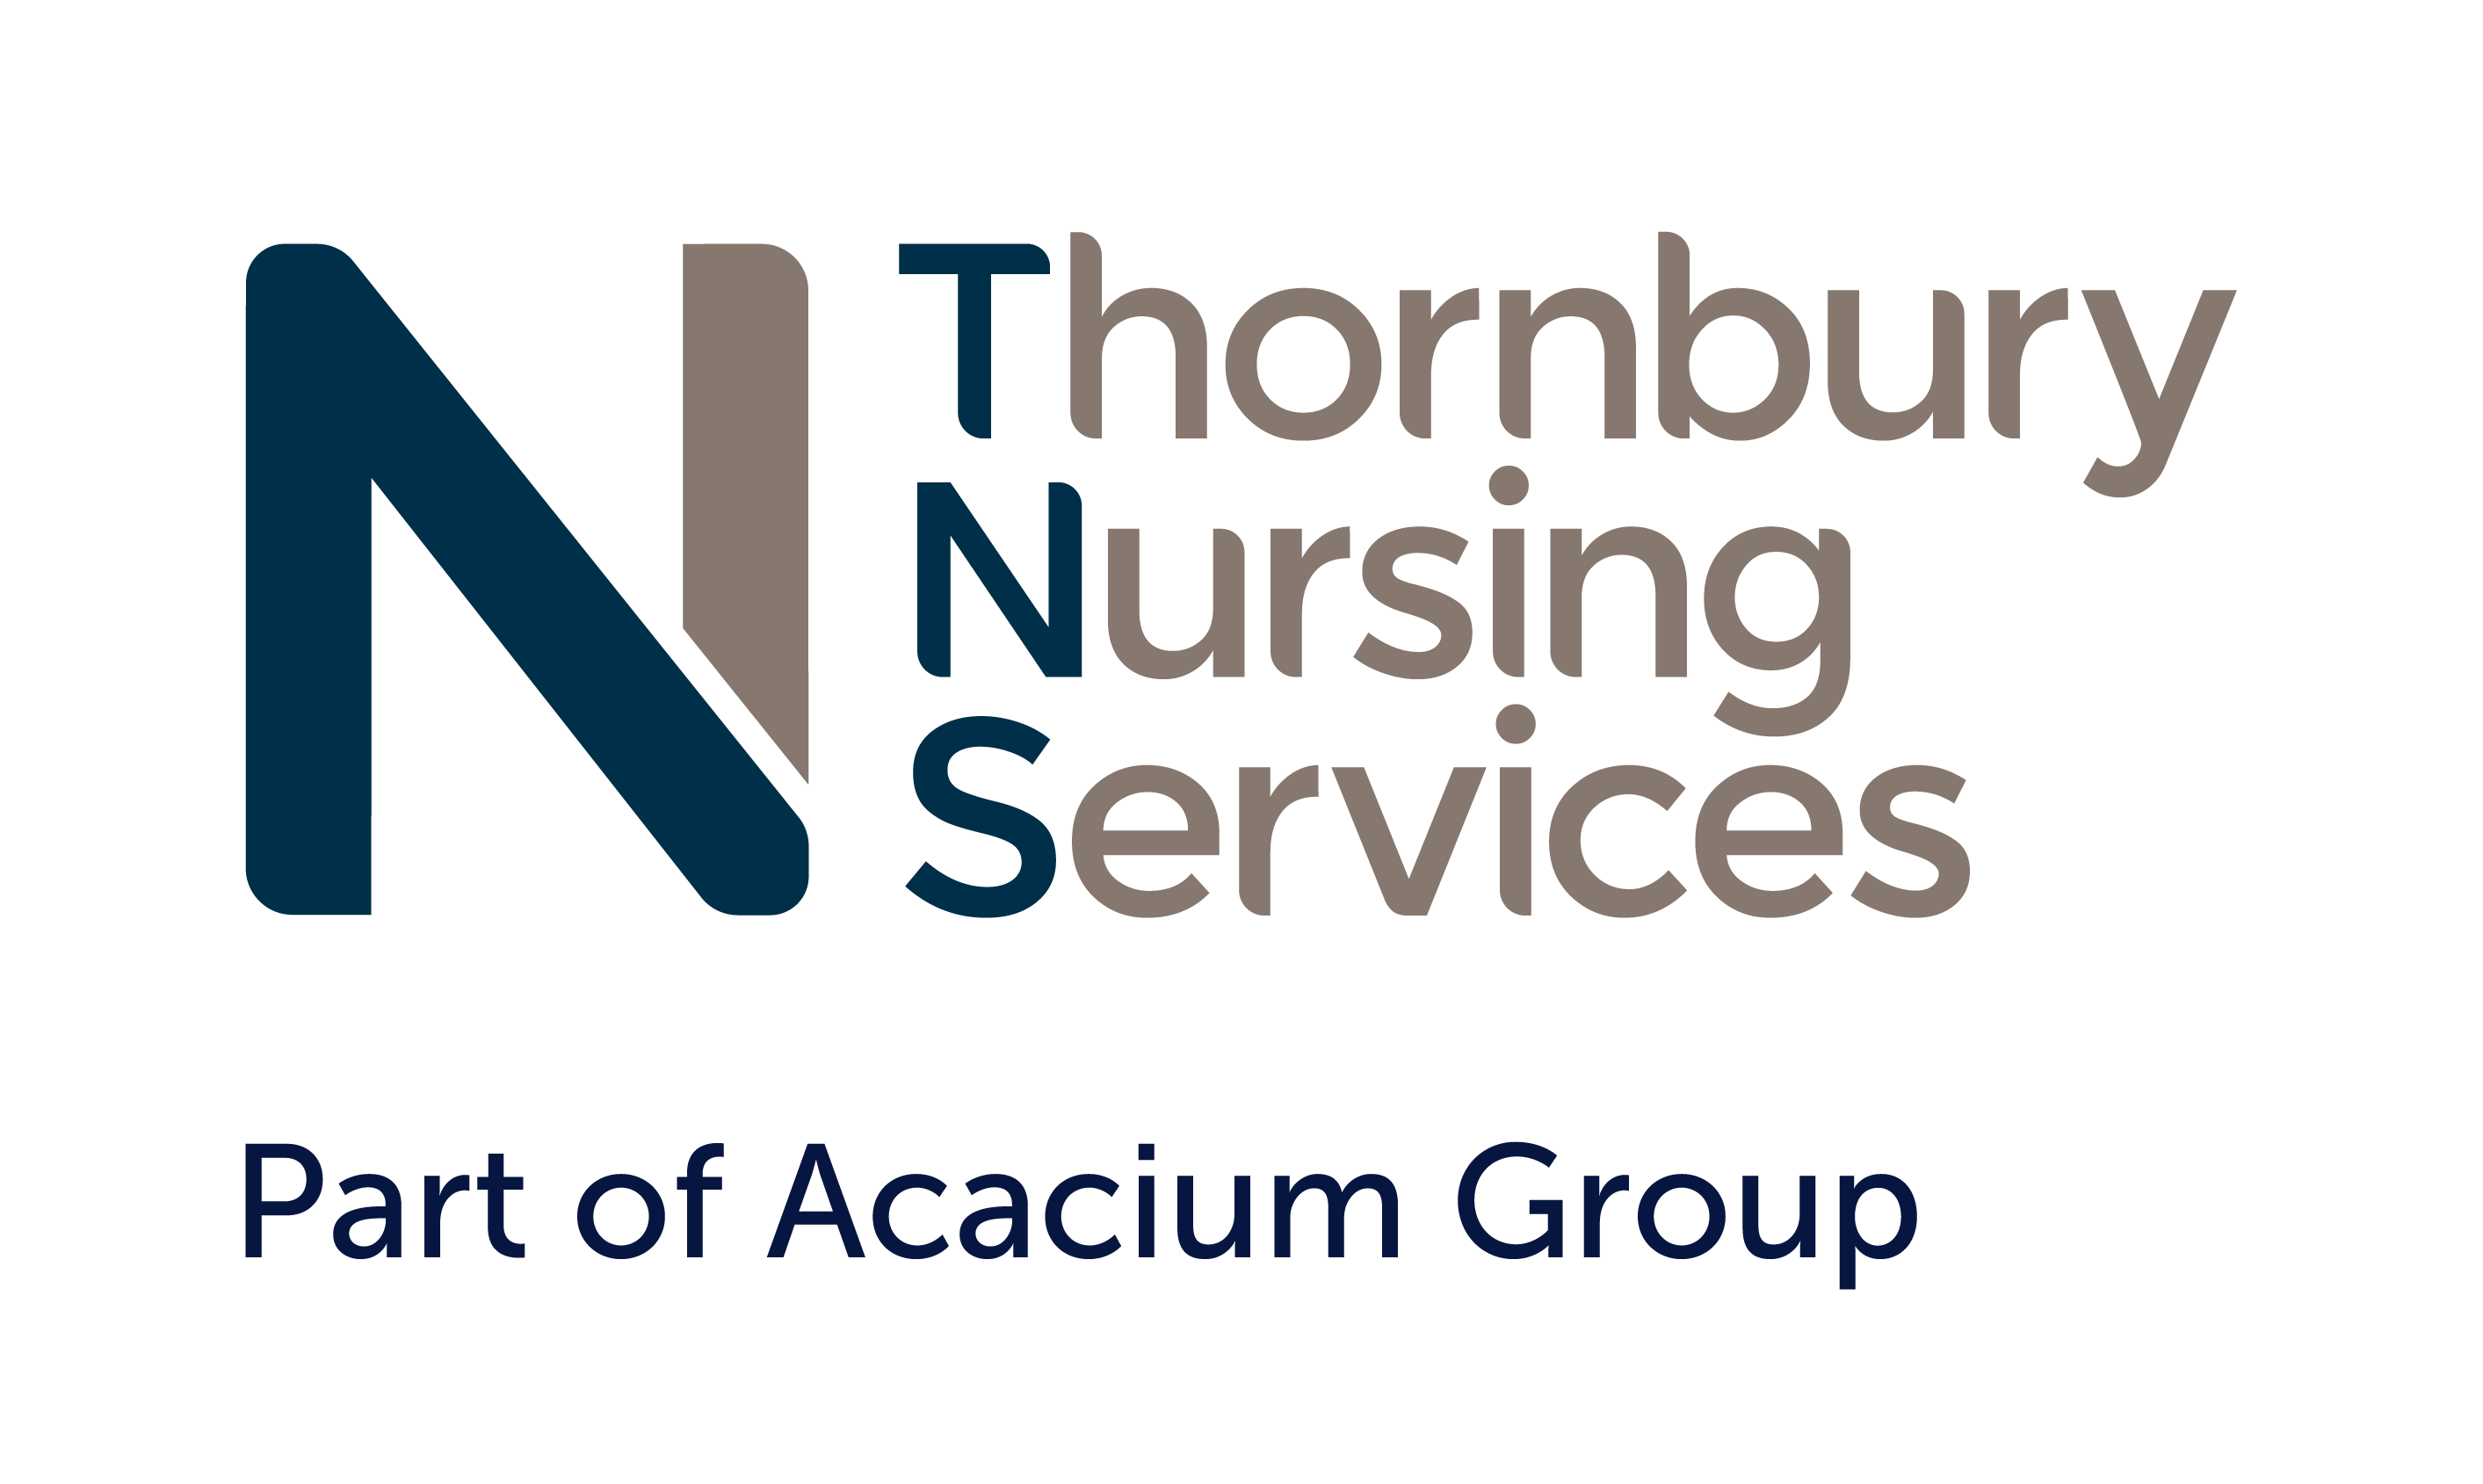 Thornbury Nursing Services Part of Acacium Group logo